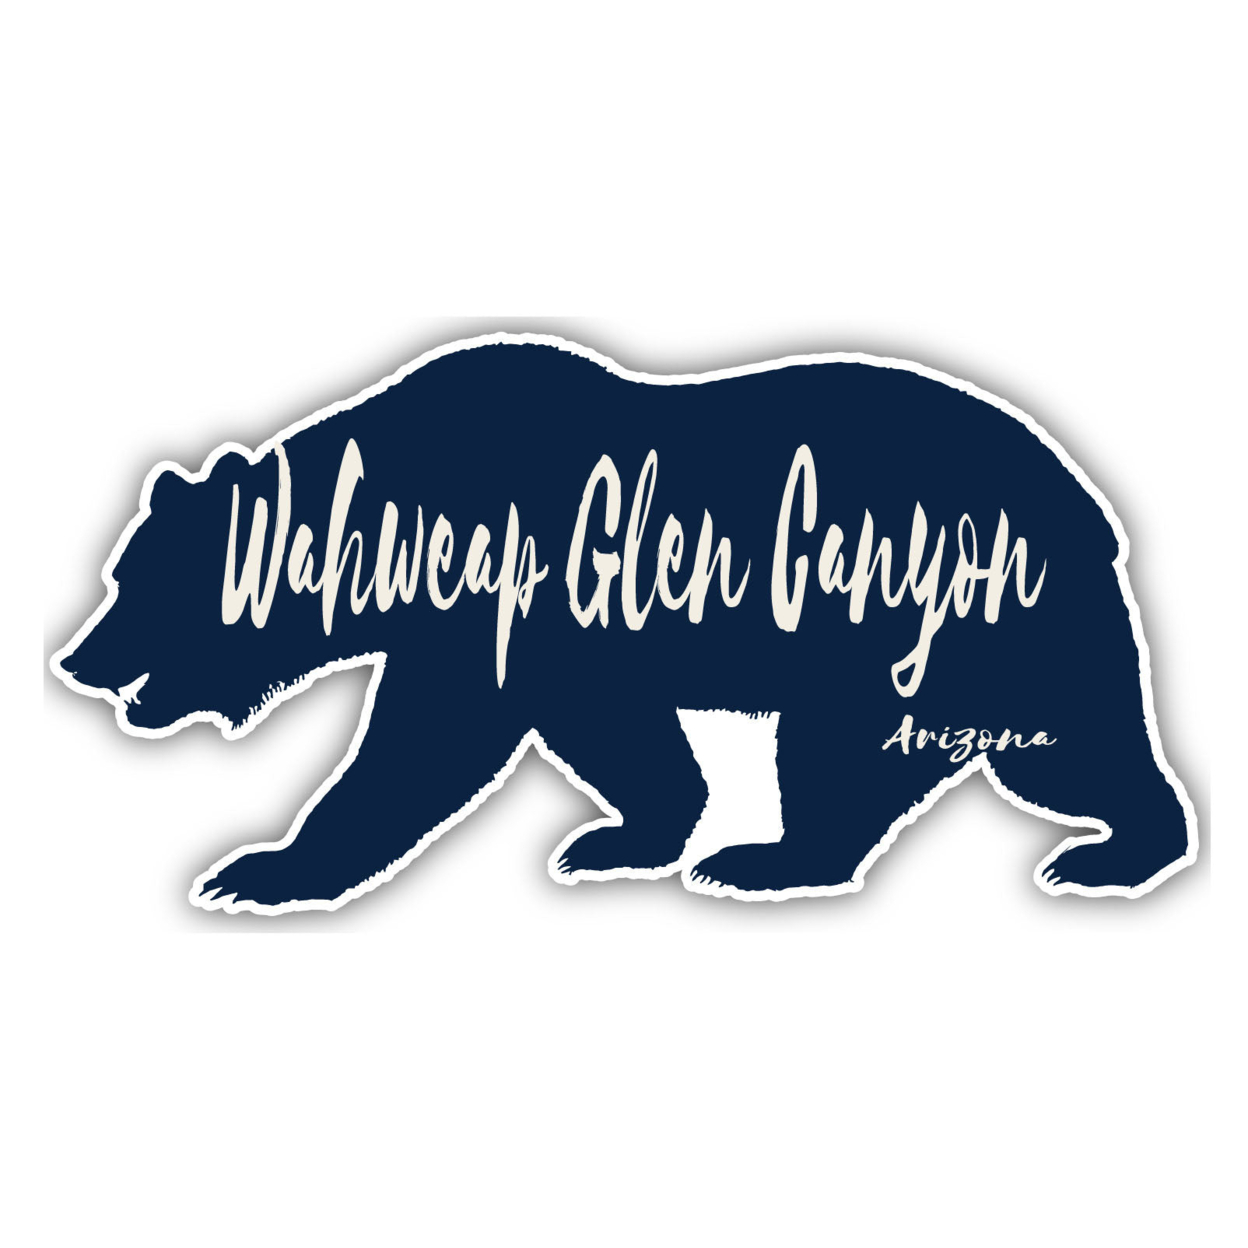 Wahweap Glen Canyon Arizona Souvenir Decorative Stickers (Choose Theme And Size) - Single Unit, 2-Inch, Bear